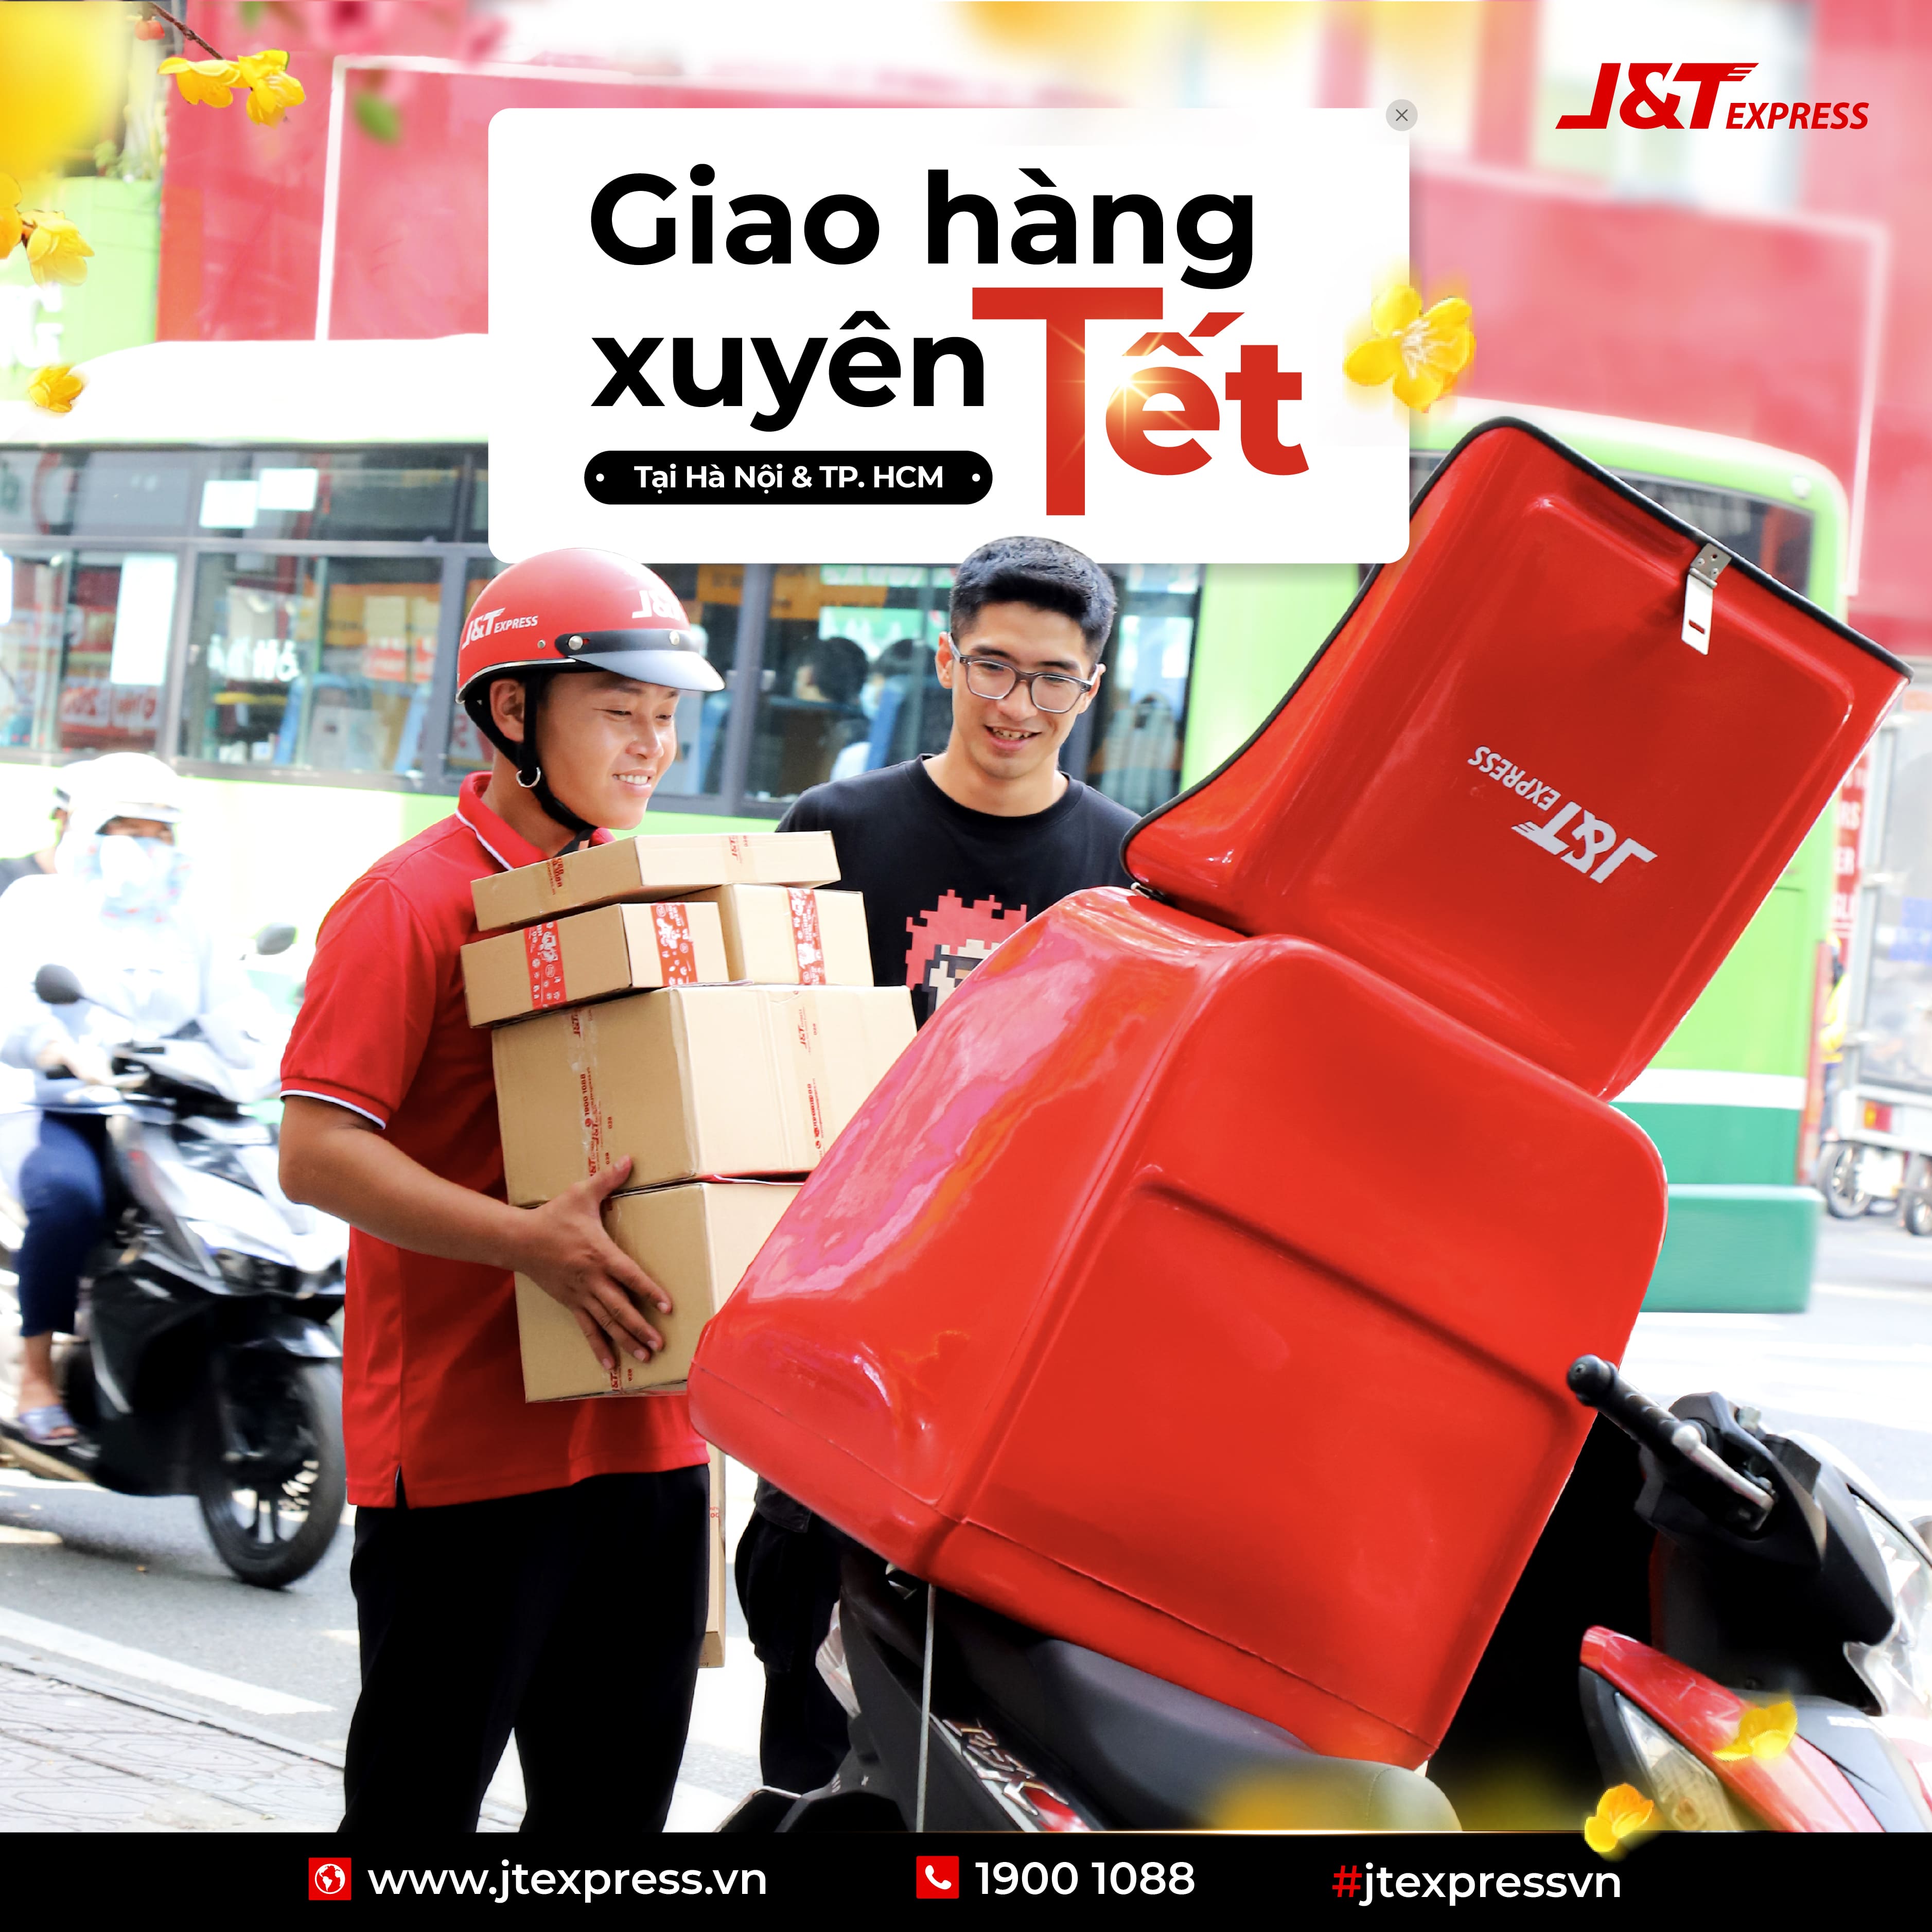 J&T Express giao hàng xuyên Tết tại TP.HCM & Hà Nội